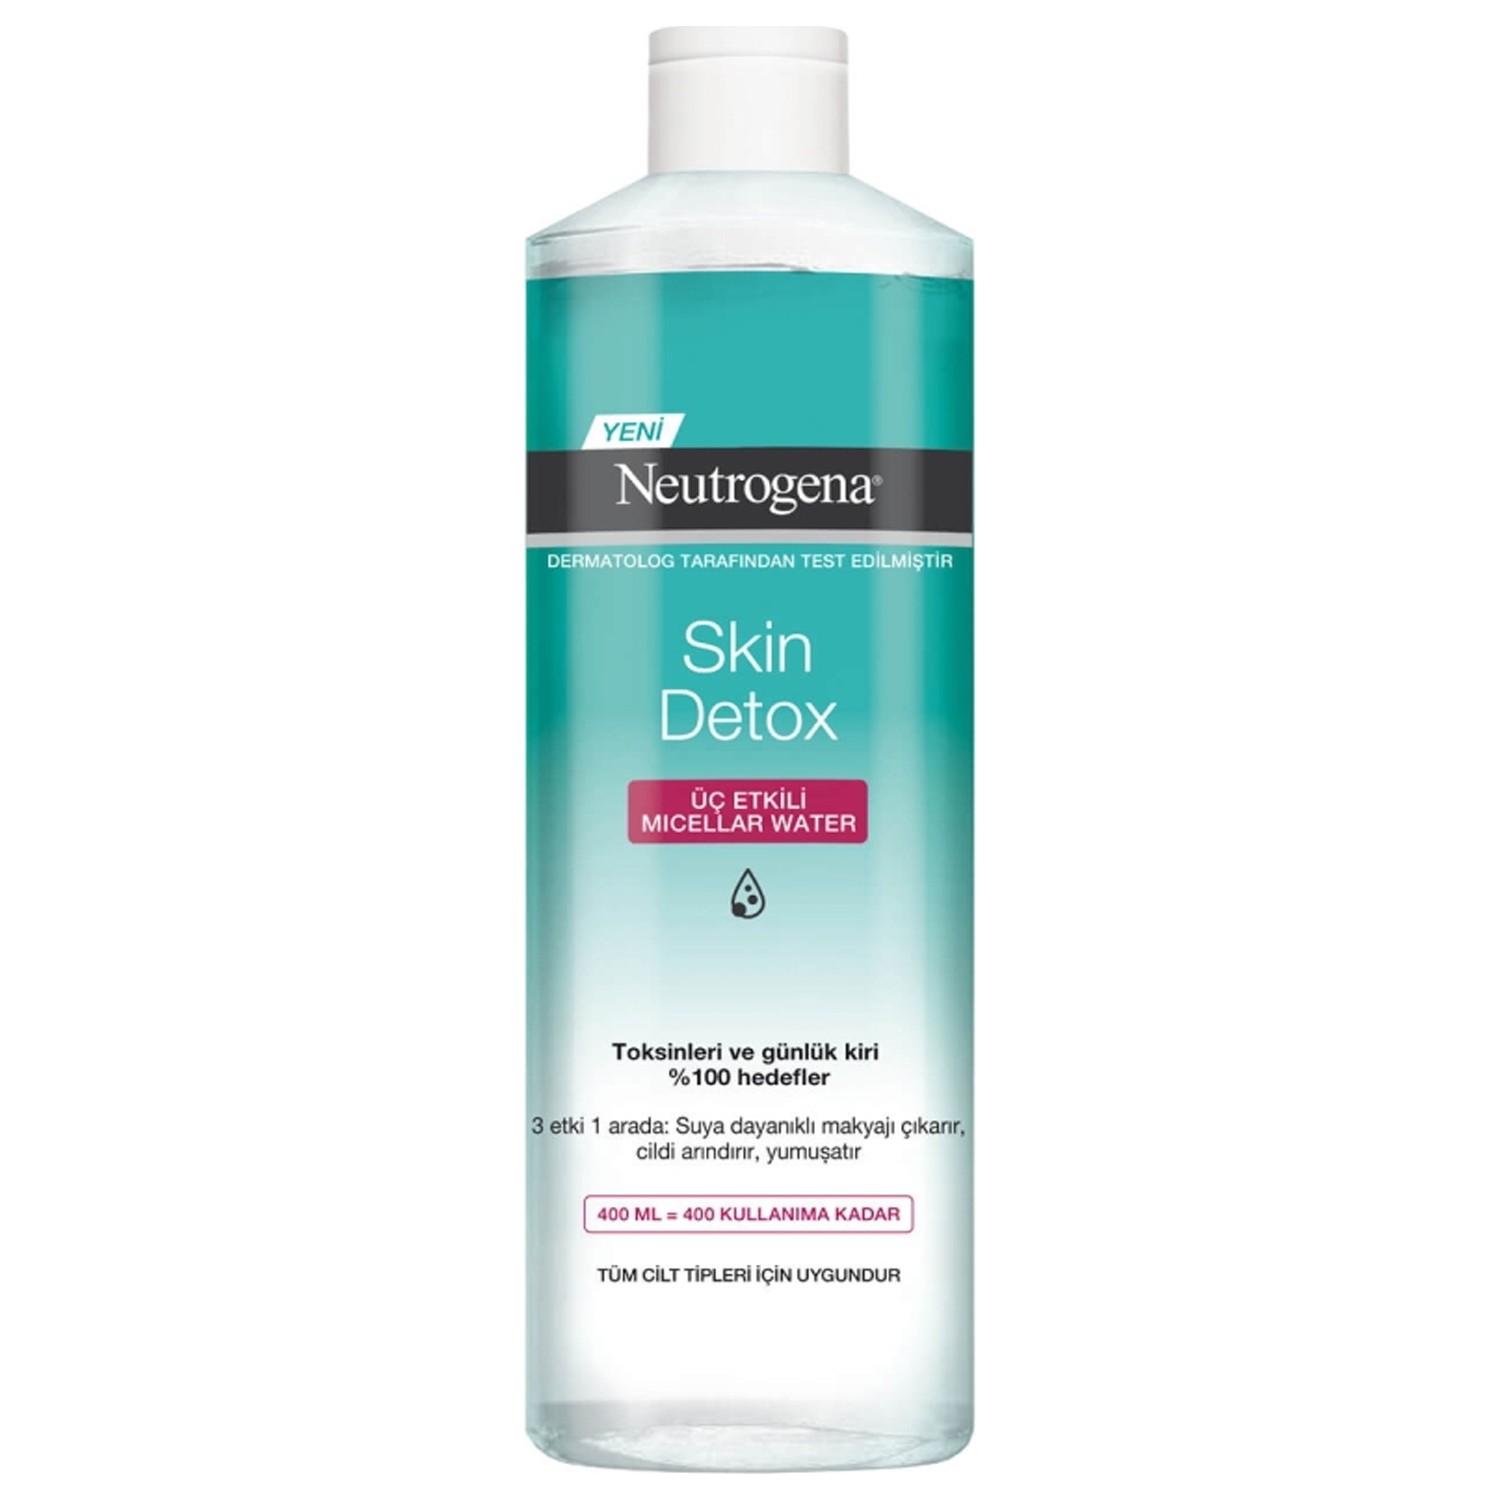 Мицеллярная вода Neutrogena Skin Detox Tip для снятия макияжа, 400 мл мицеллярная вода для снятия макияжа eau thermale avene cleanance 400 мл